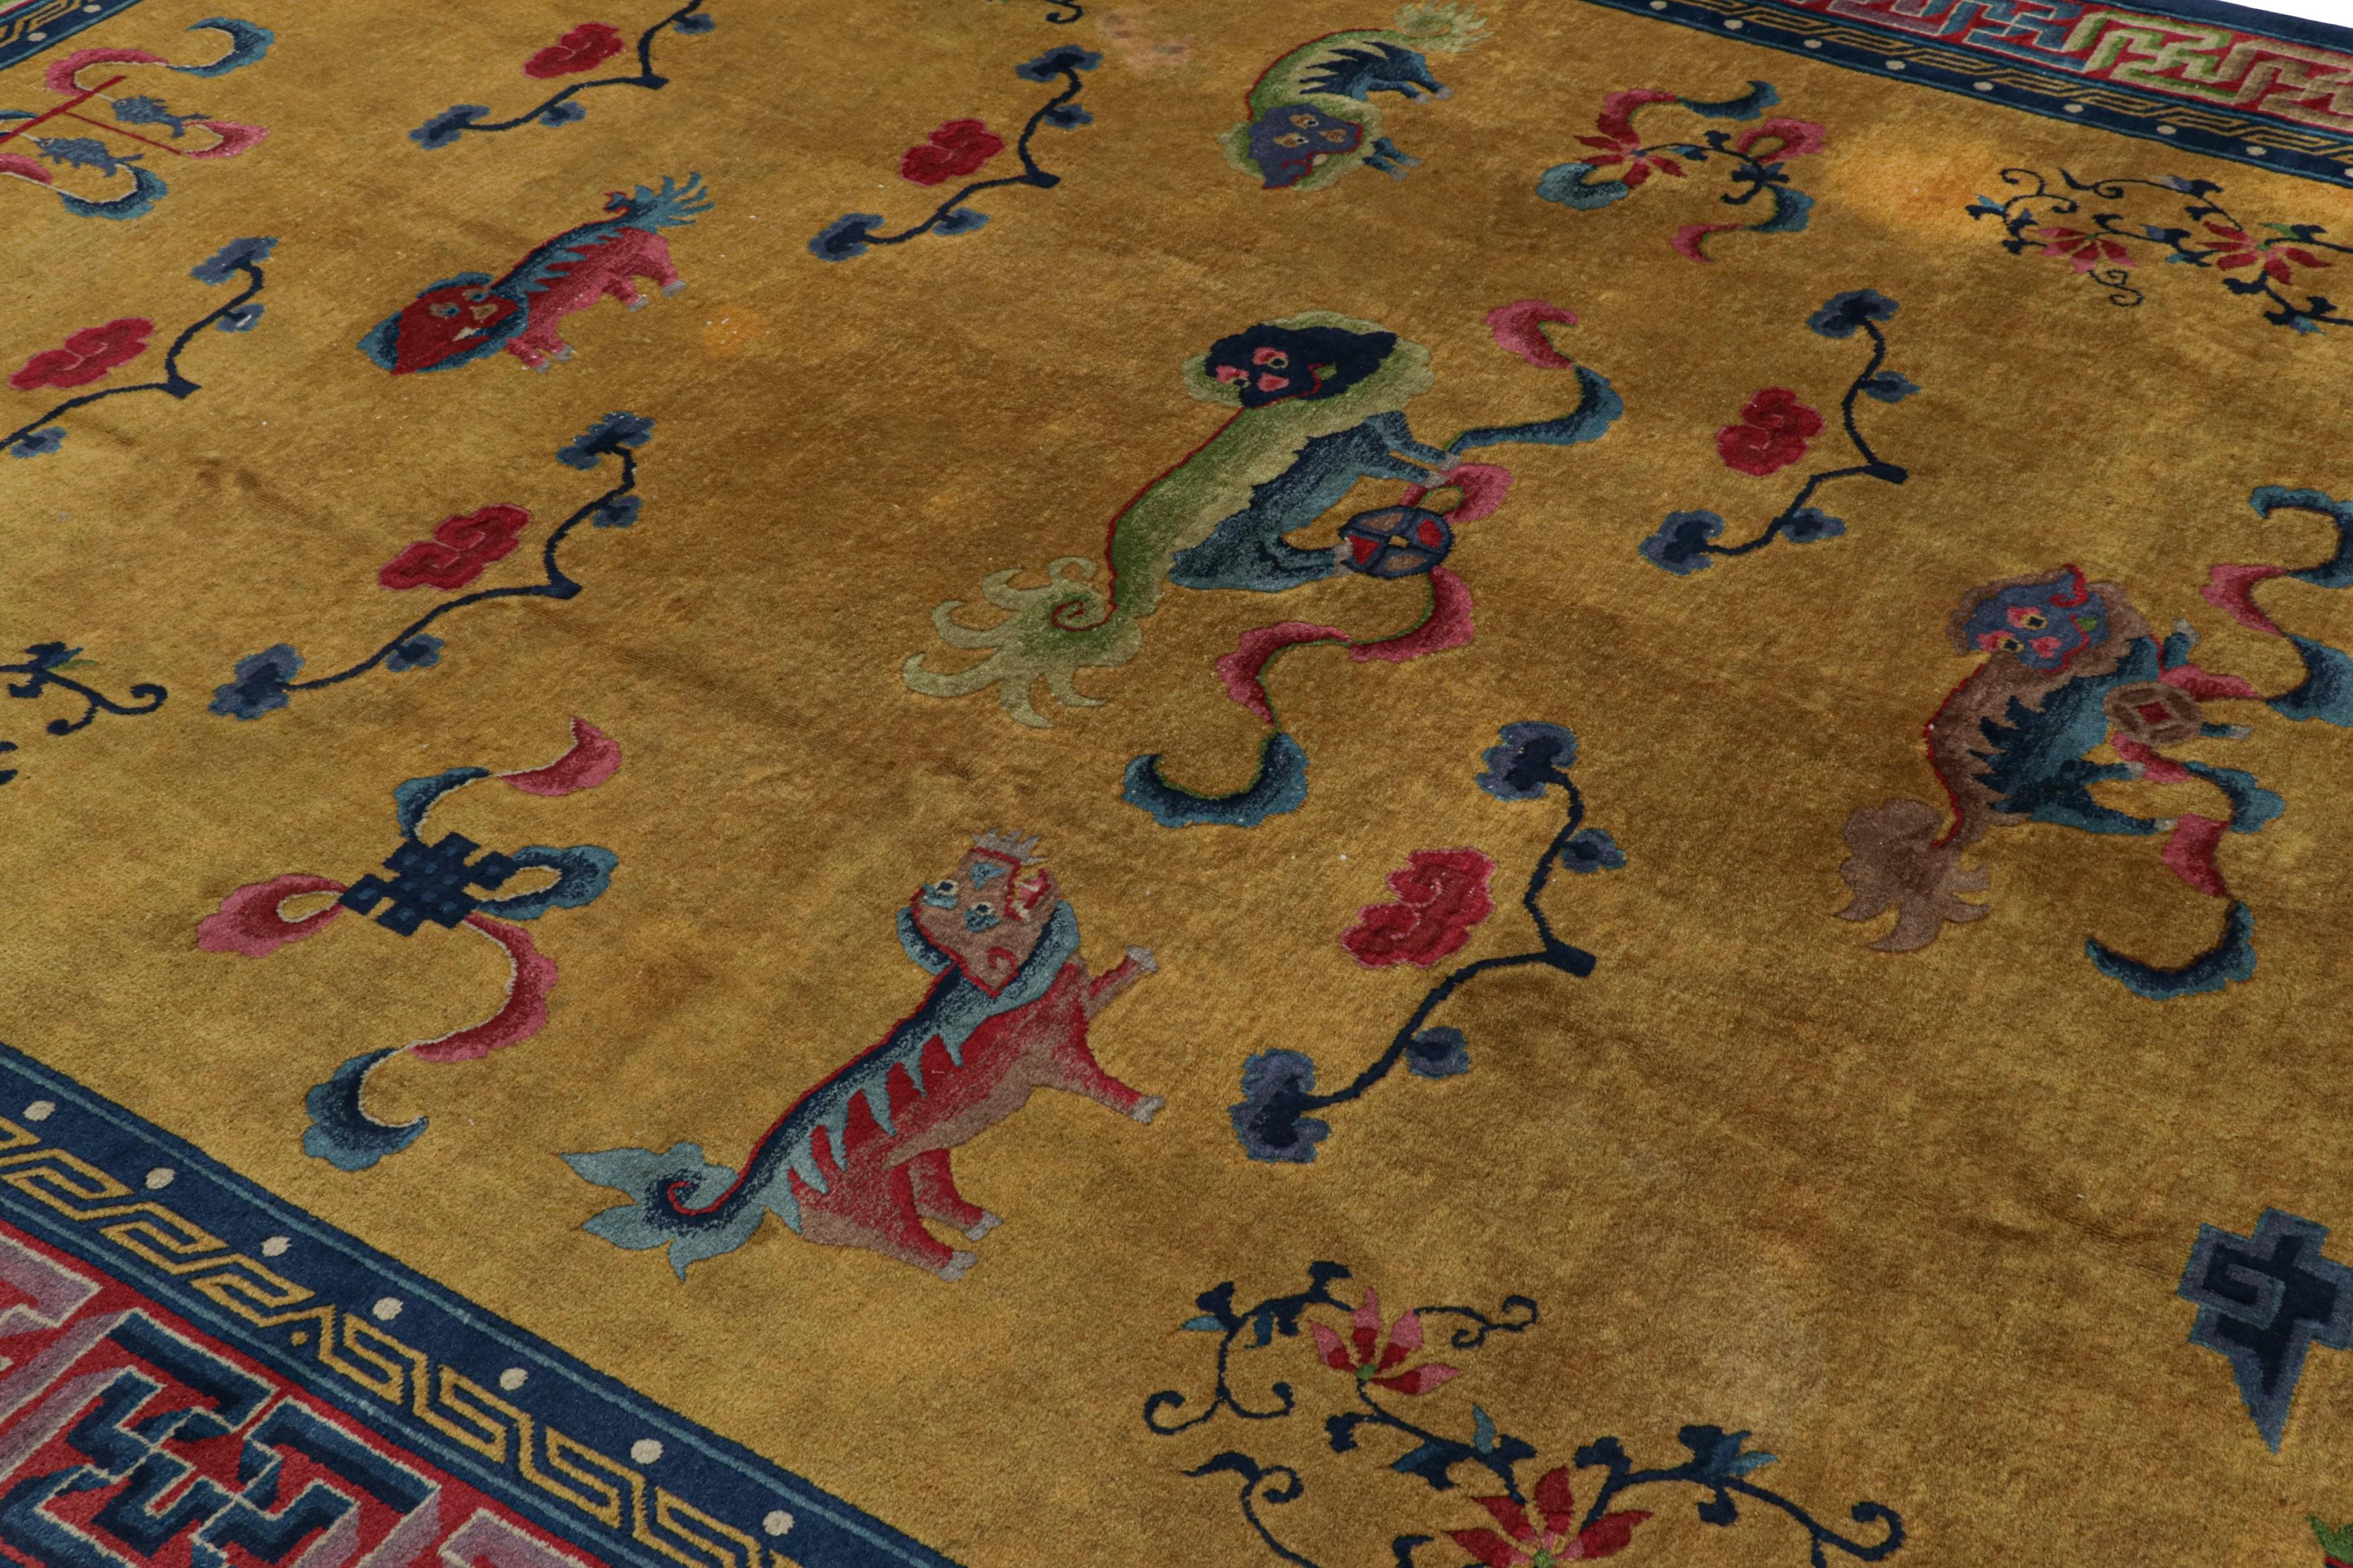 Dieser 9x11 große antike indochinesische Art-Déco-Teppich aus Wolle, handgeknüpft um 1920-1930, ist eine seltene und aufregende Kuration aus der Rug & Kilim Collection.

Über das Design: 

Es handelt sich um ein äußerst begehrtes Sammlerstück mit